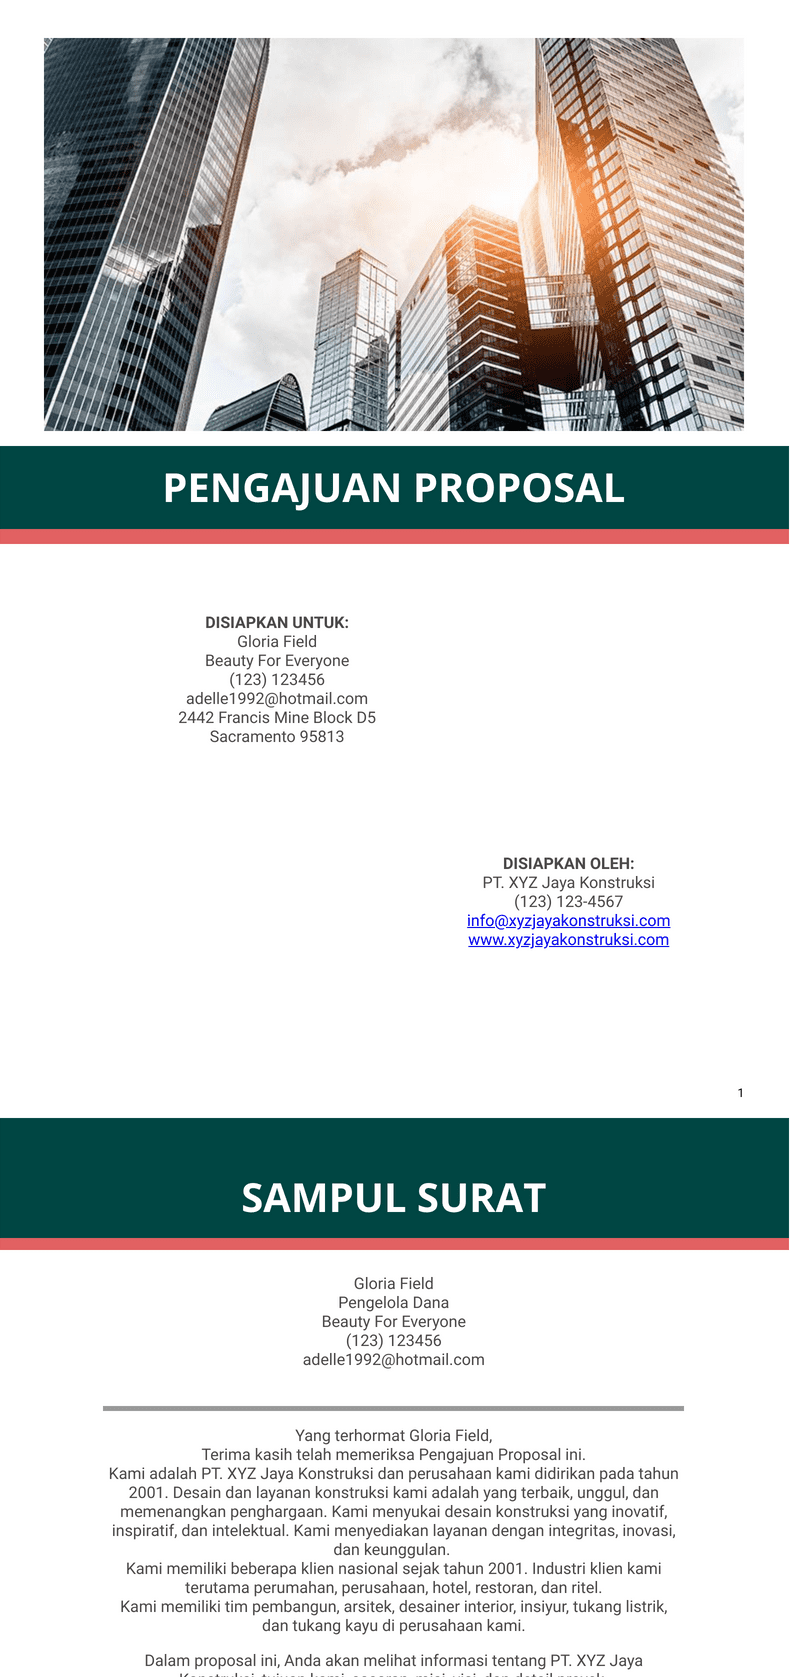 Pengajuan Proposal